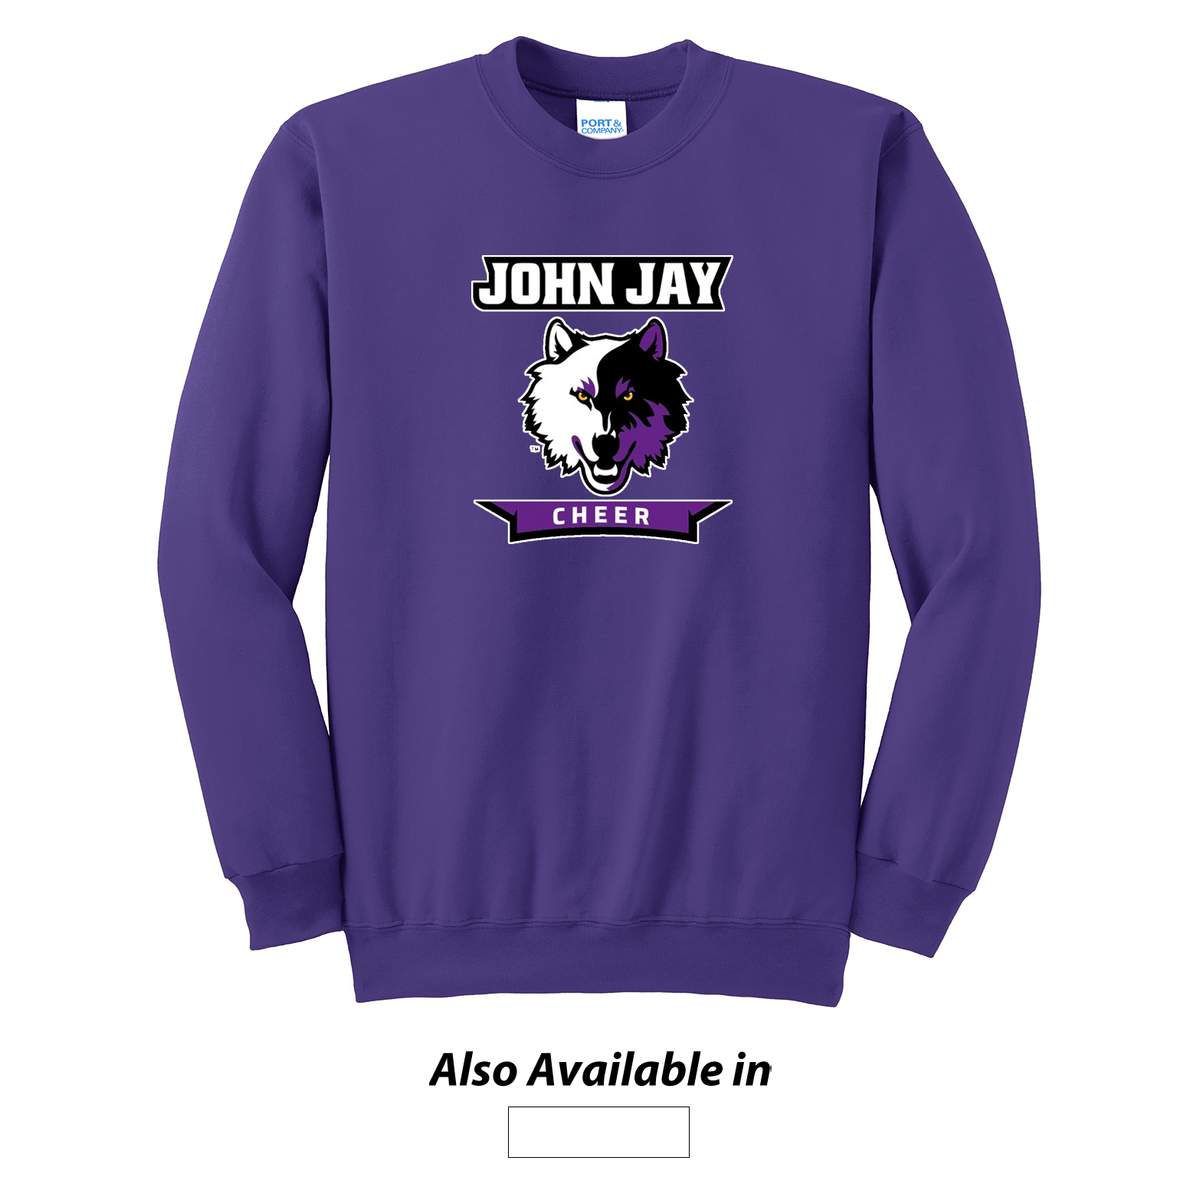 John Jay Youth Cheer Crew Neck Sweater